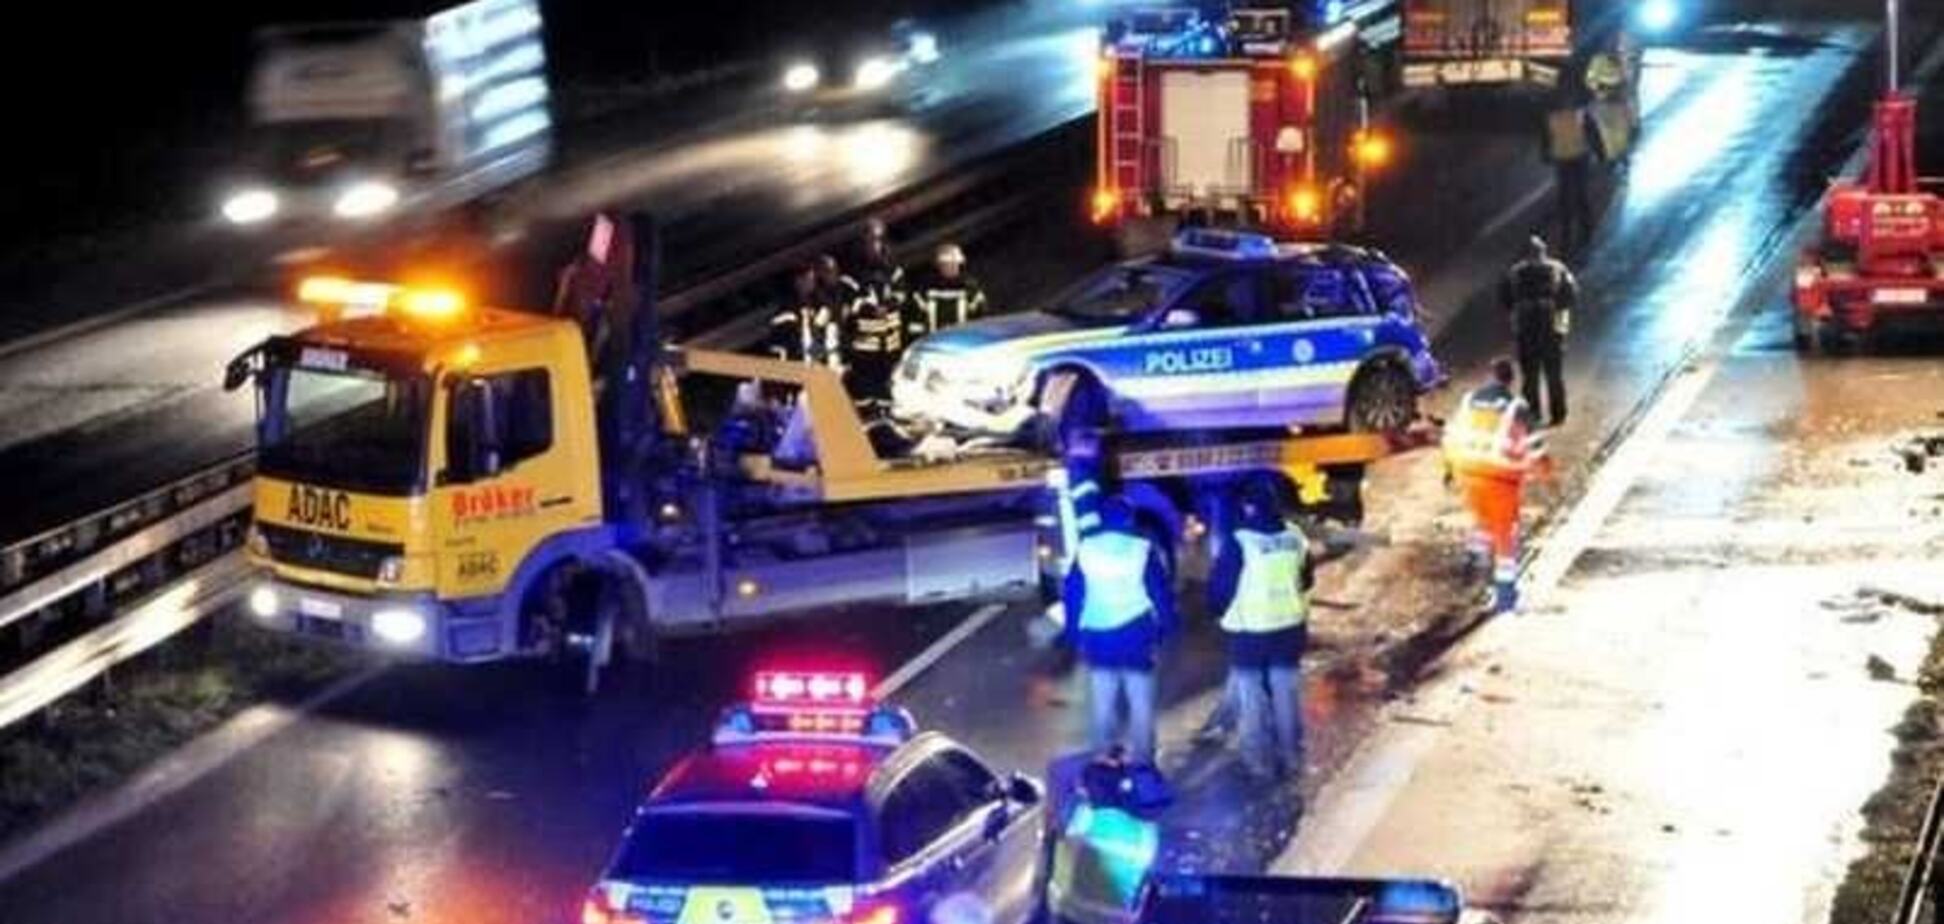 П'яний українець на фурі роздавив поліцейське авто в Німеччині: є жертва